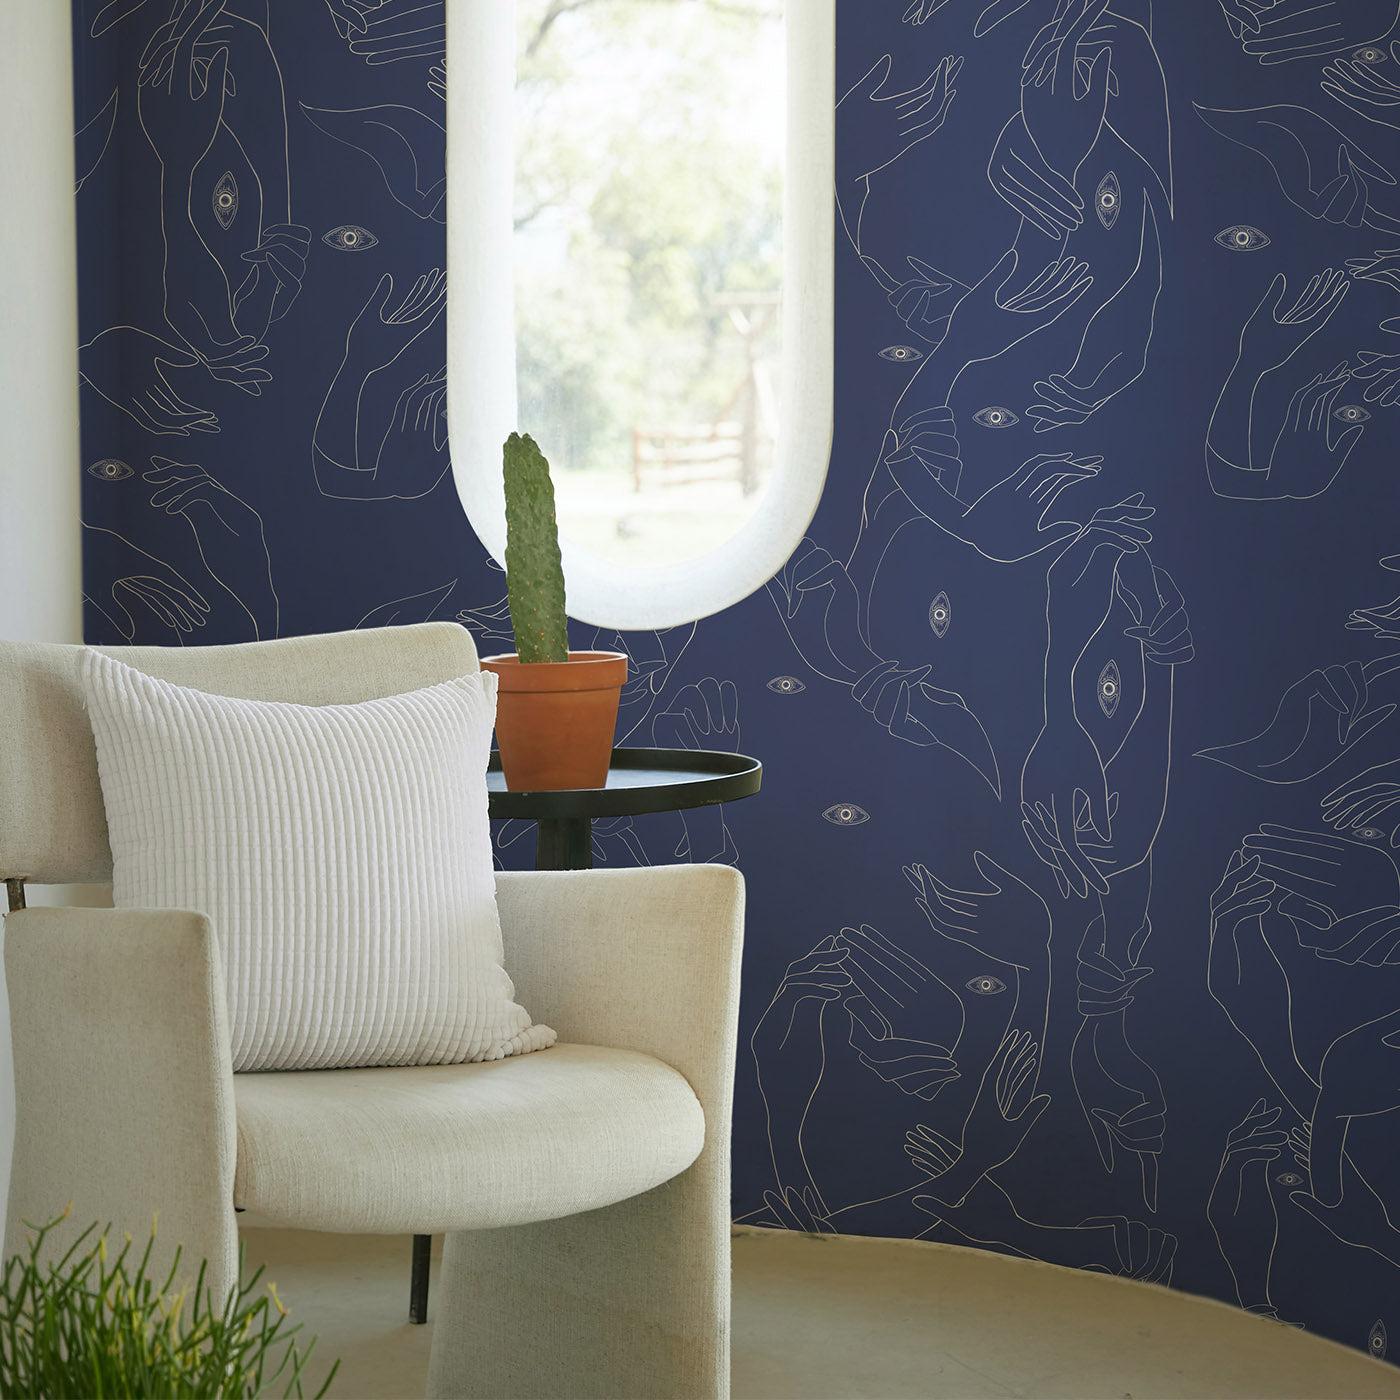 Uno, Nessuno Light Blue Wallpaper - Alternative view 3